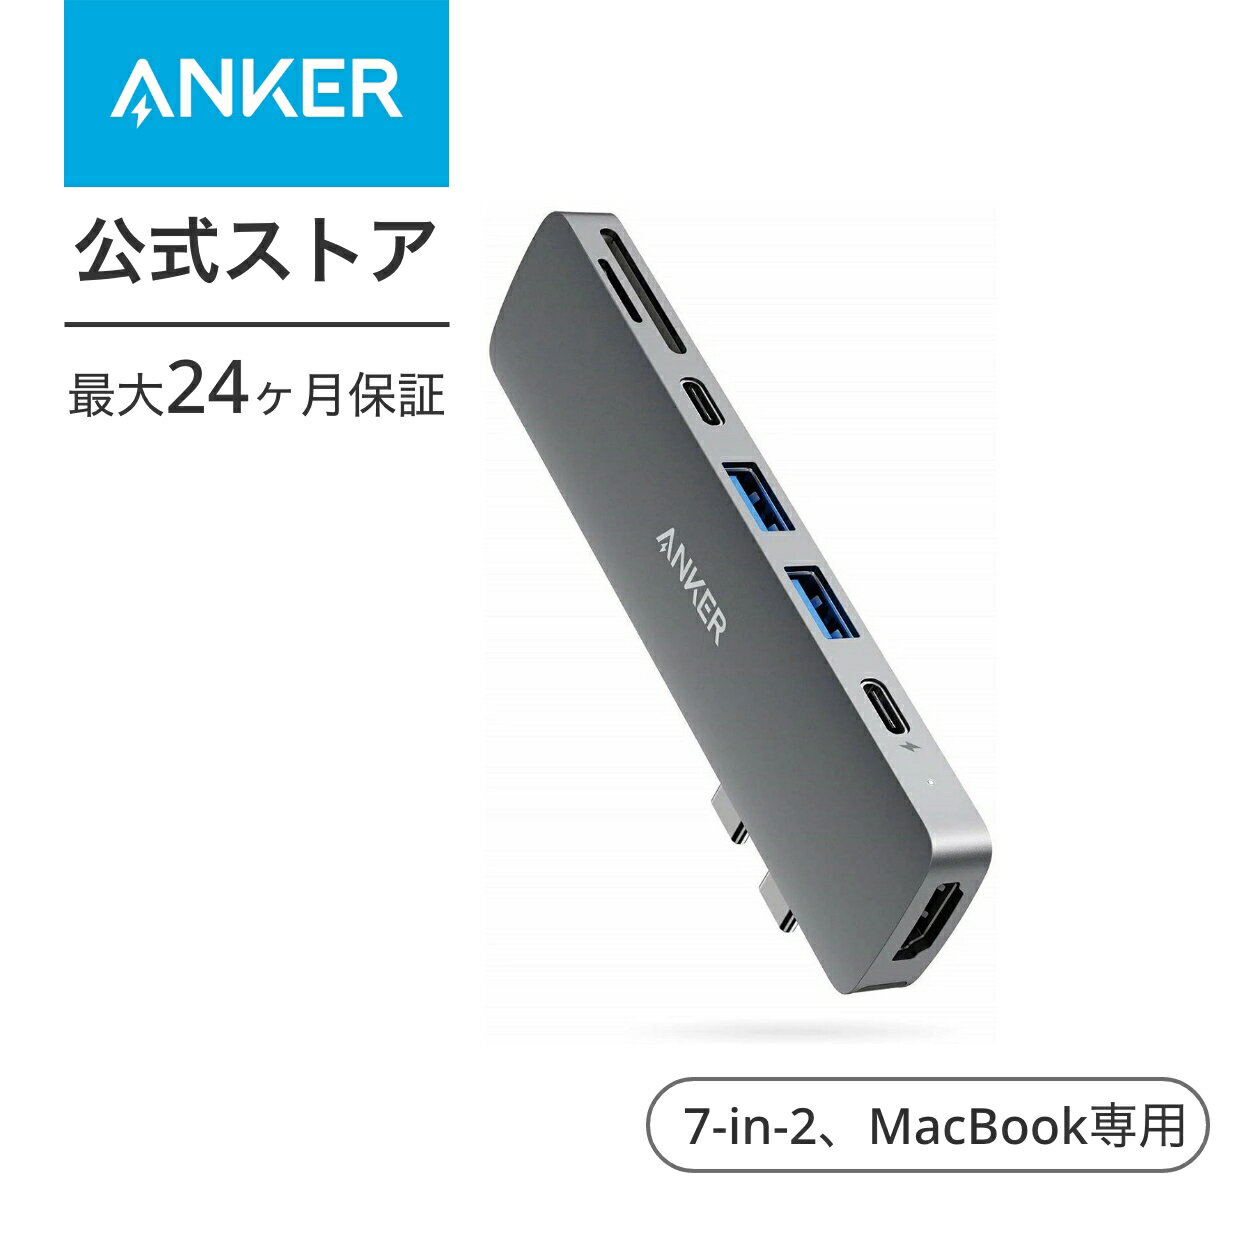 【1 800円OFF 5/16まで】Anker PowerExpand Direct 7-in-2 USB-C PD メディア ハブ 4K対応 HDMIポート 100W Power Delivery 対応 多機能USB-Cポート USB-A ポート microSD & SDカード スロット…